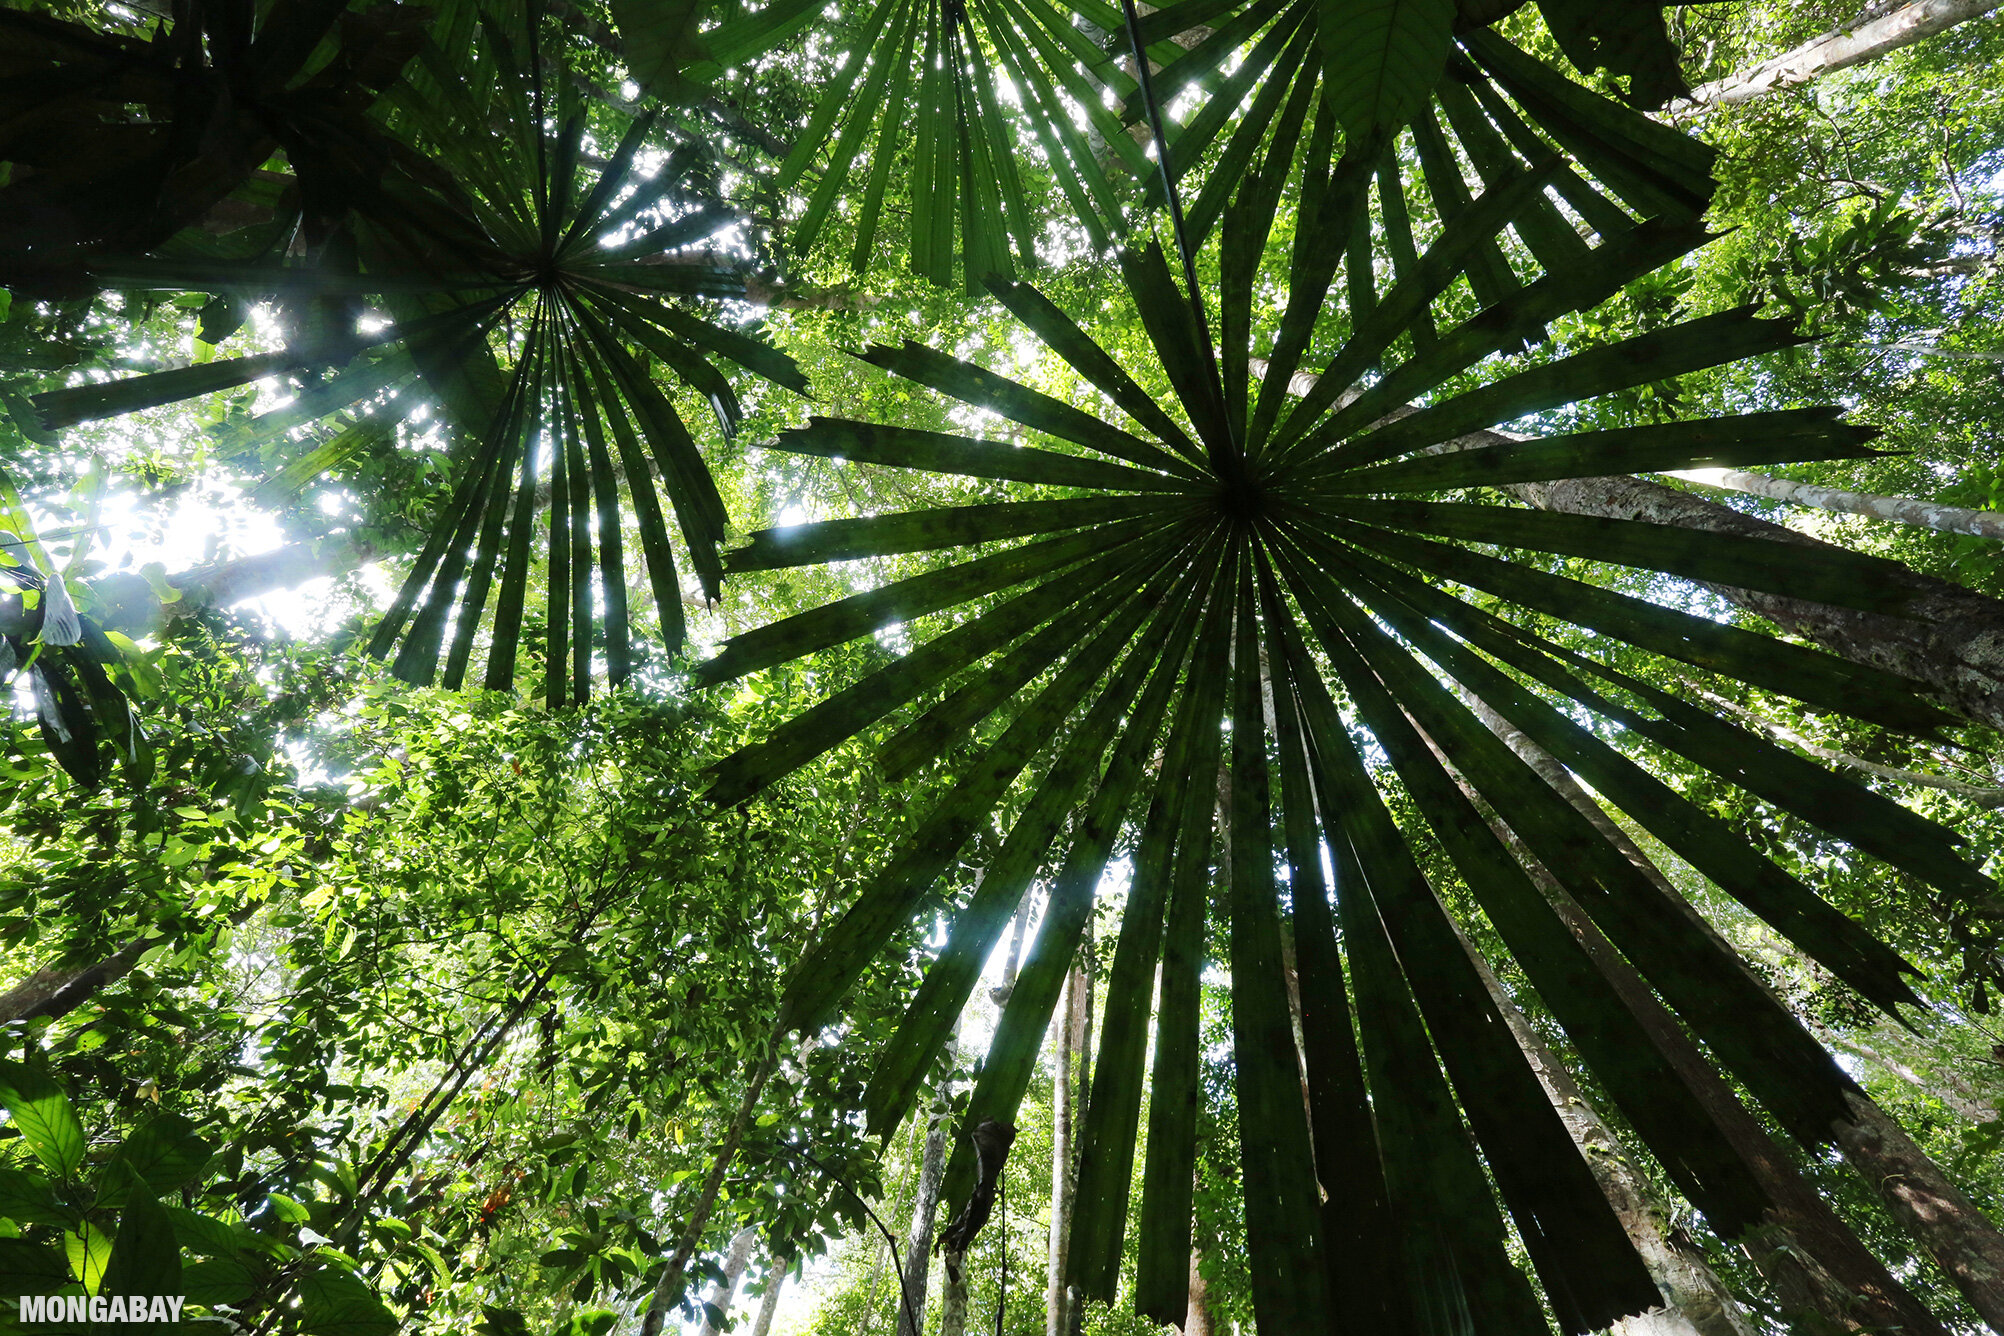 Rainforest in Sarawak, Malaysia. Photo by Rhett A. Butler.